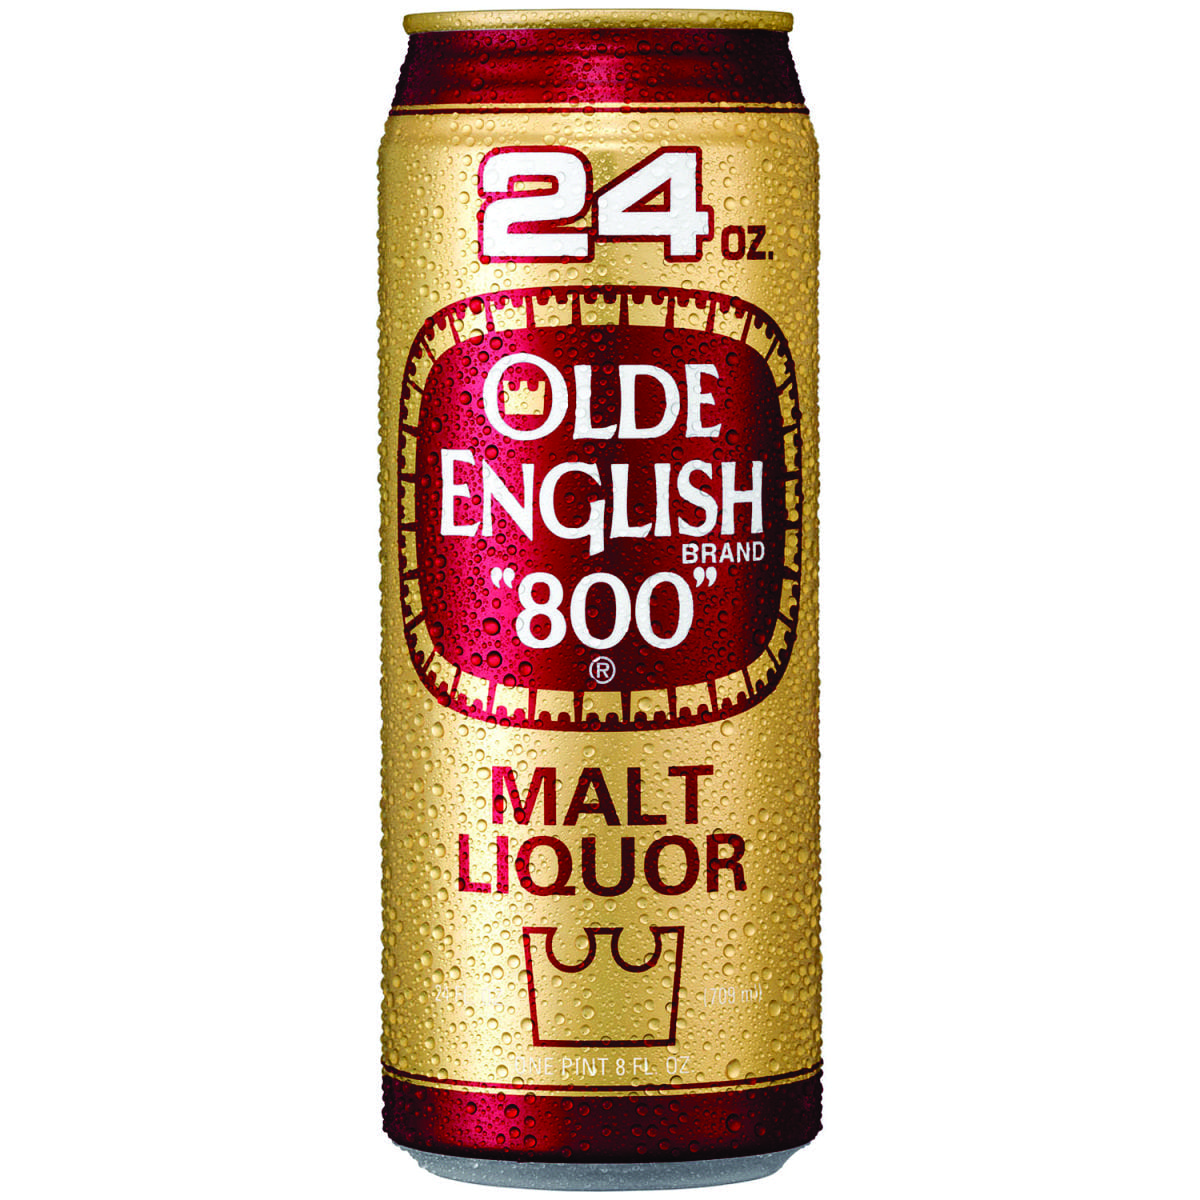 Best old english. Olde English 800 Malt Liquor. Old English 800 Malt Liquor. Malt Liquor - Olde English brand 800. Пиво Olde English 800.